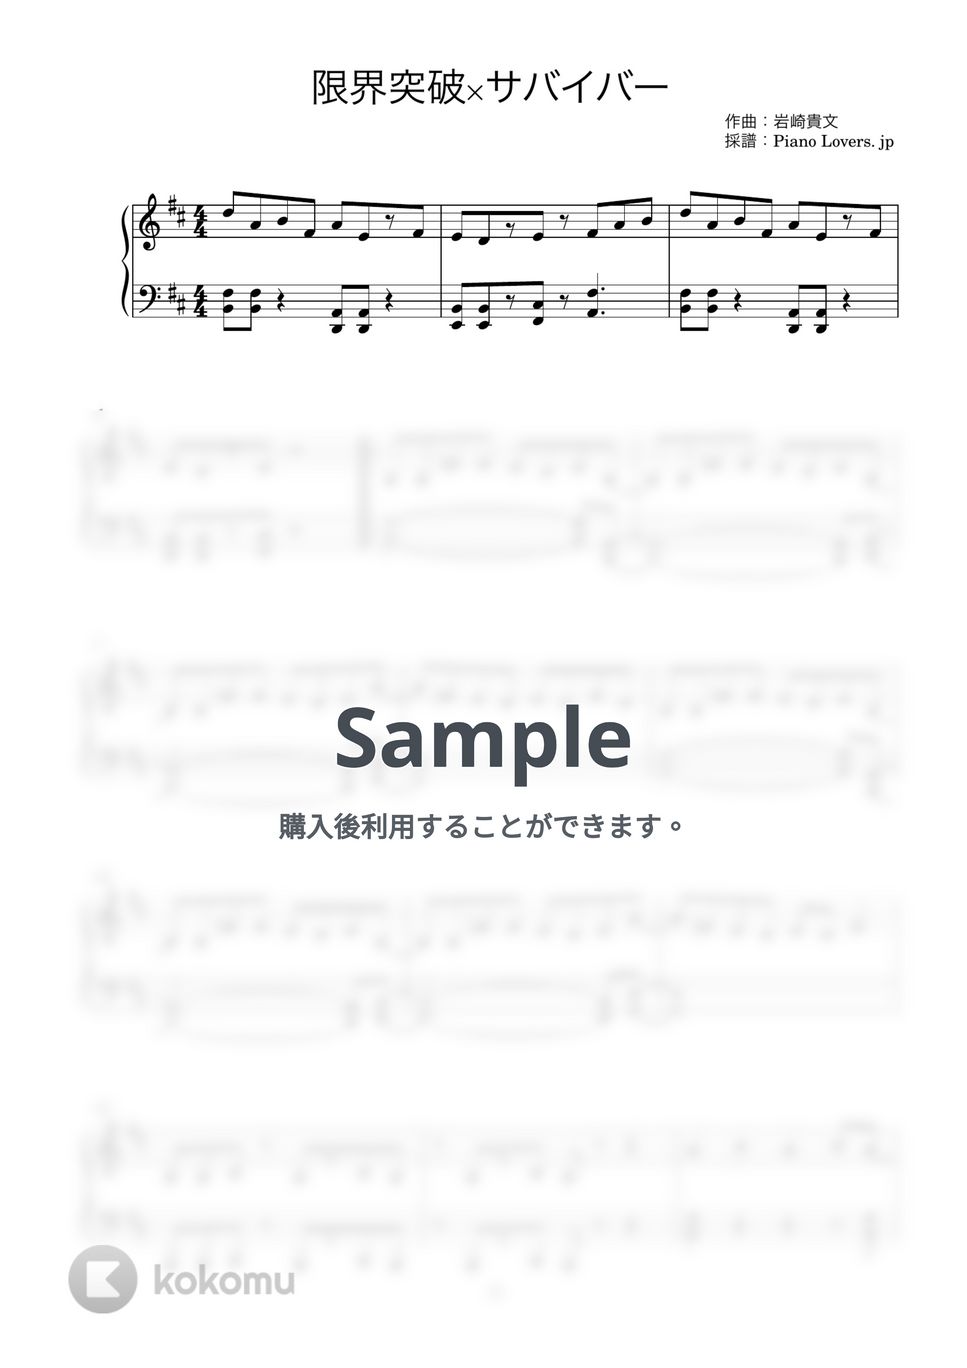 氷川きよし - 限界突破×サバイバー (ドラゴンボール超 / ピアノ楽譜) by Piano Lovers. jp